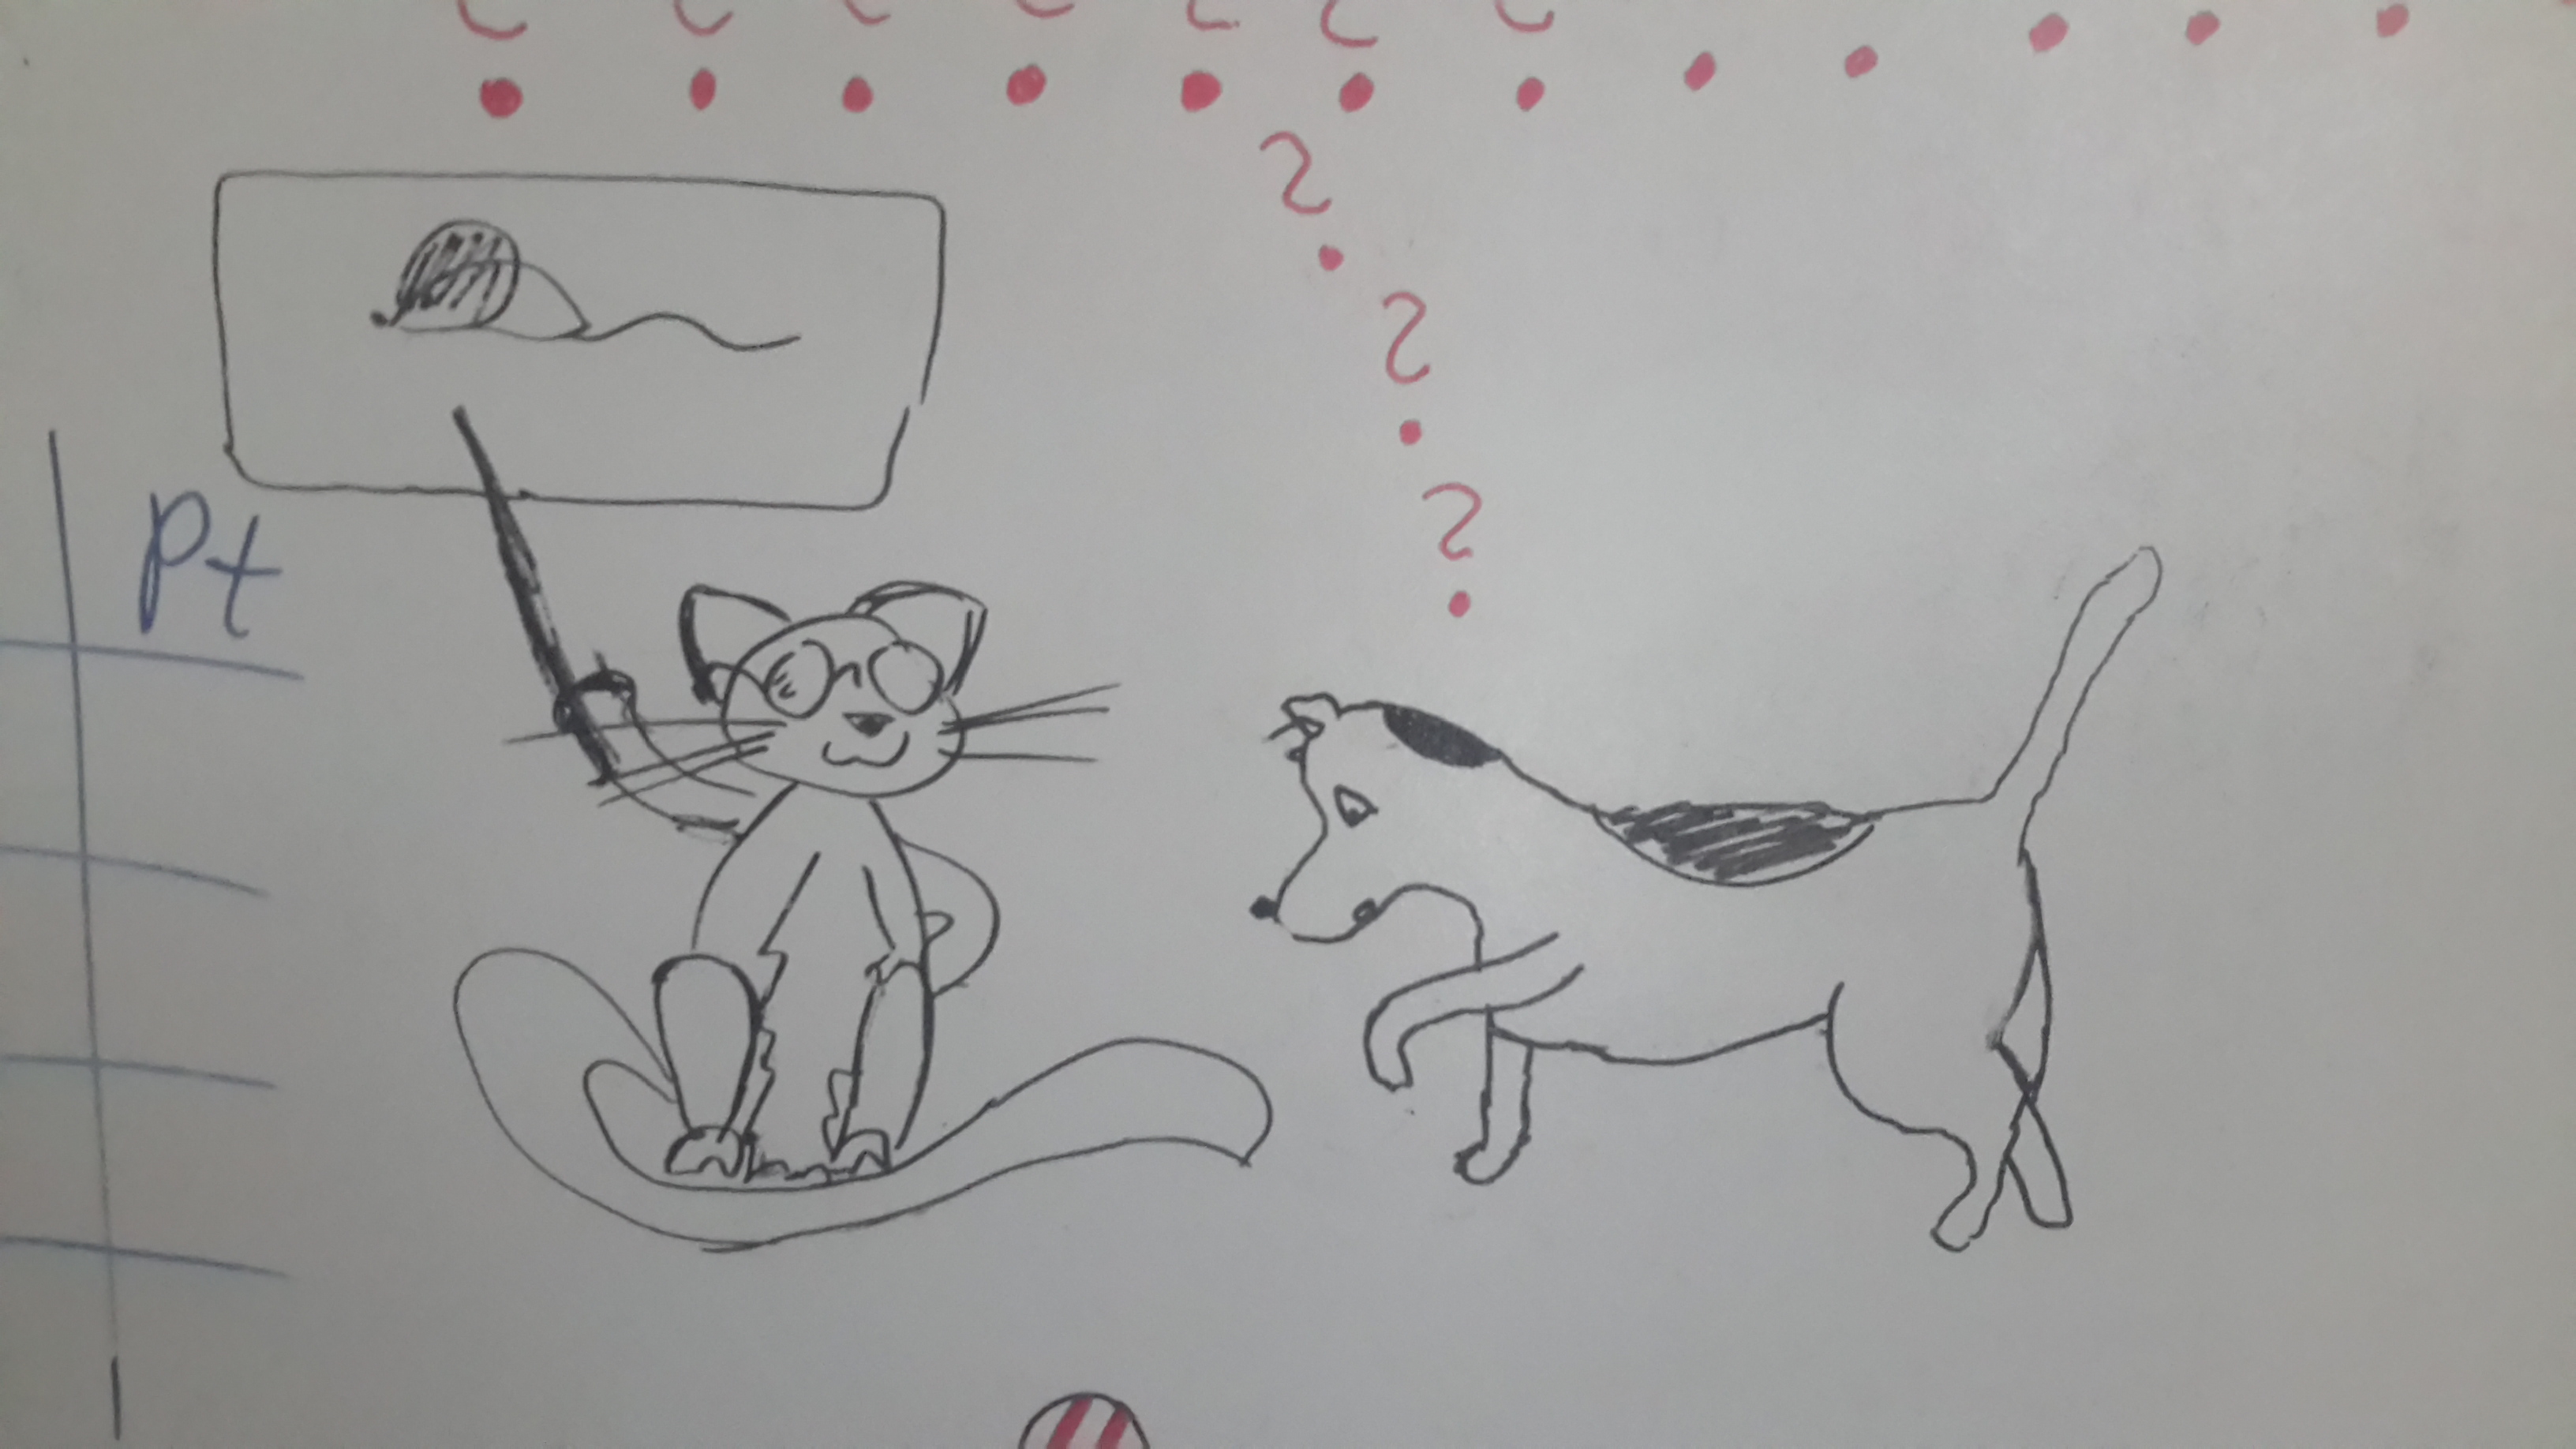 Kot w okularach siedzi i pokazuje pałeczką mysz, narysowaną w zawieszonym nad kotem dymku. Pies patrzy ze zdziwieniem w dół, na koci ogon, nad nim kilka znaków zapytania. - jak pies z kotem - pies i kot